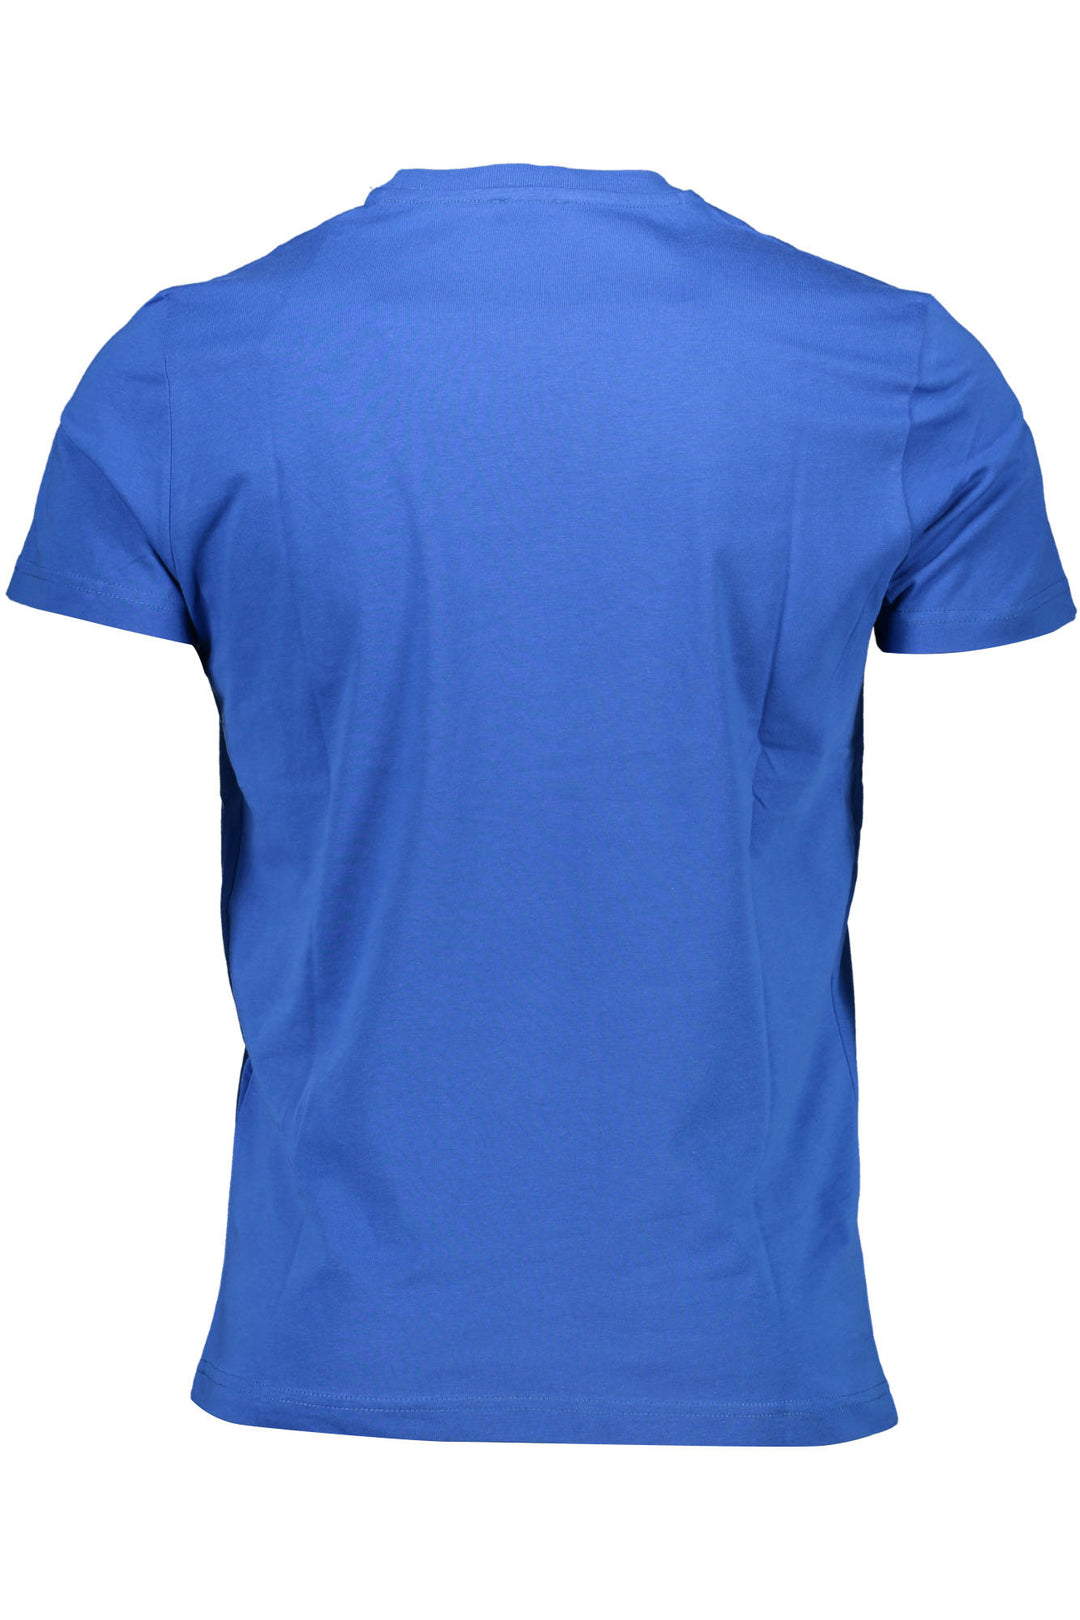 DIESEL Herren T-Shirt Sweatshirt Oberteil mit Rundhalsausschnitt, kurzarm